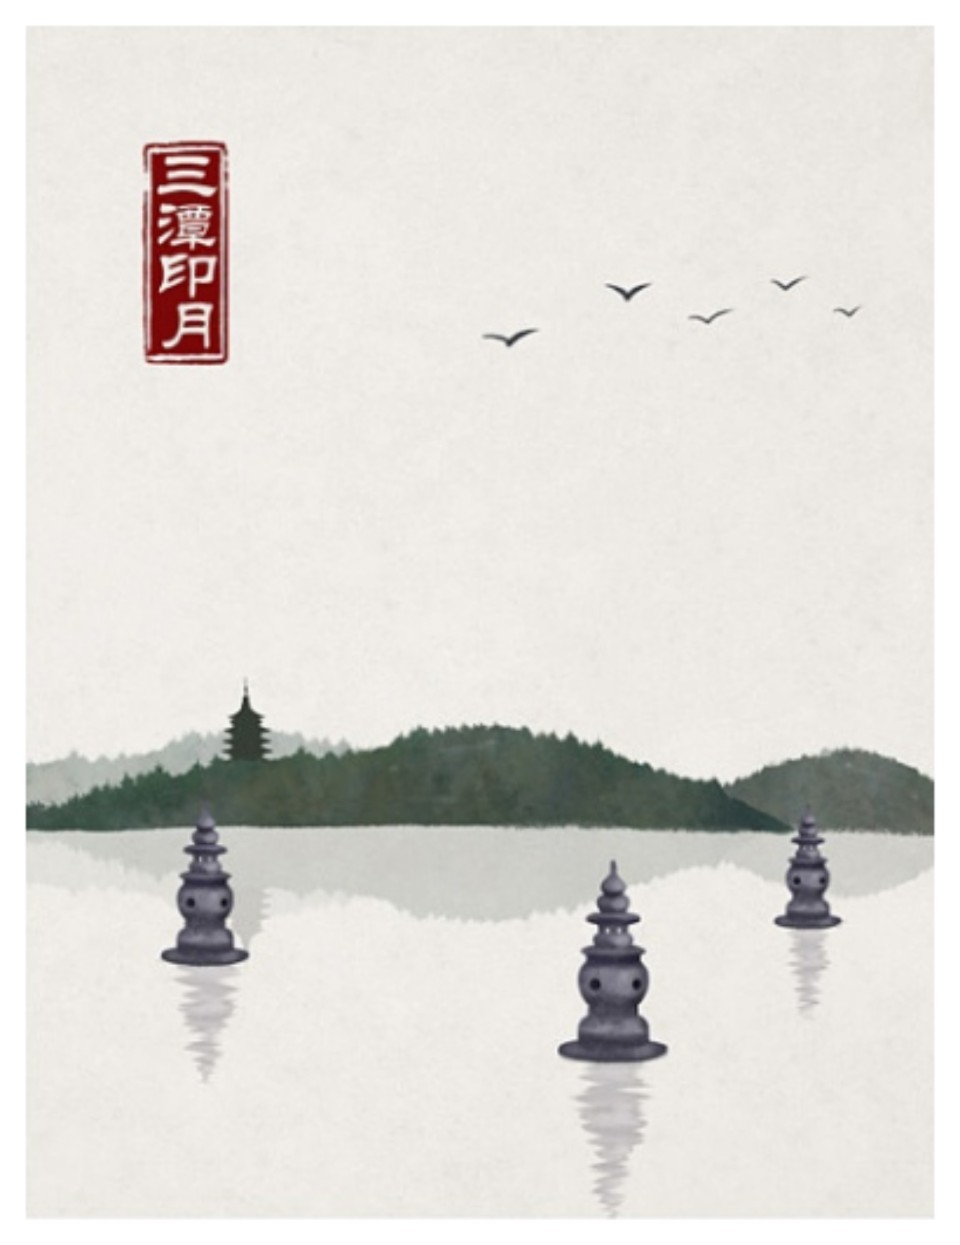 石家小鬼水墨中国风竹间系列杭州印象西湖十景三潭印月